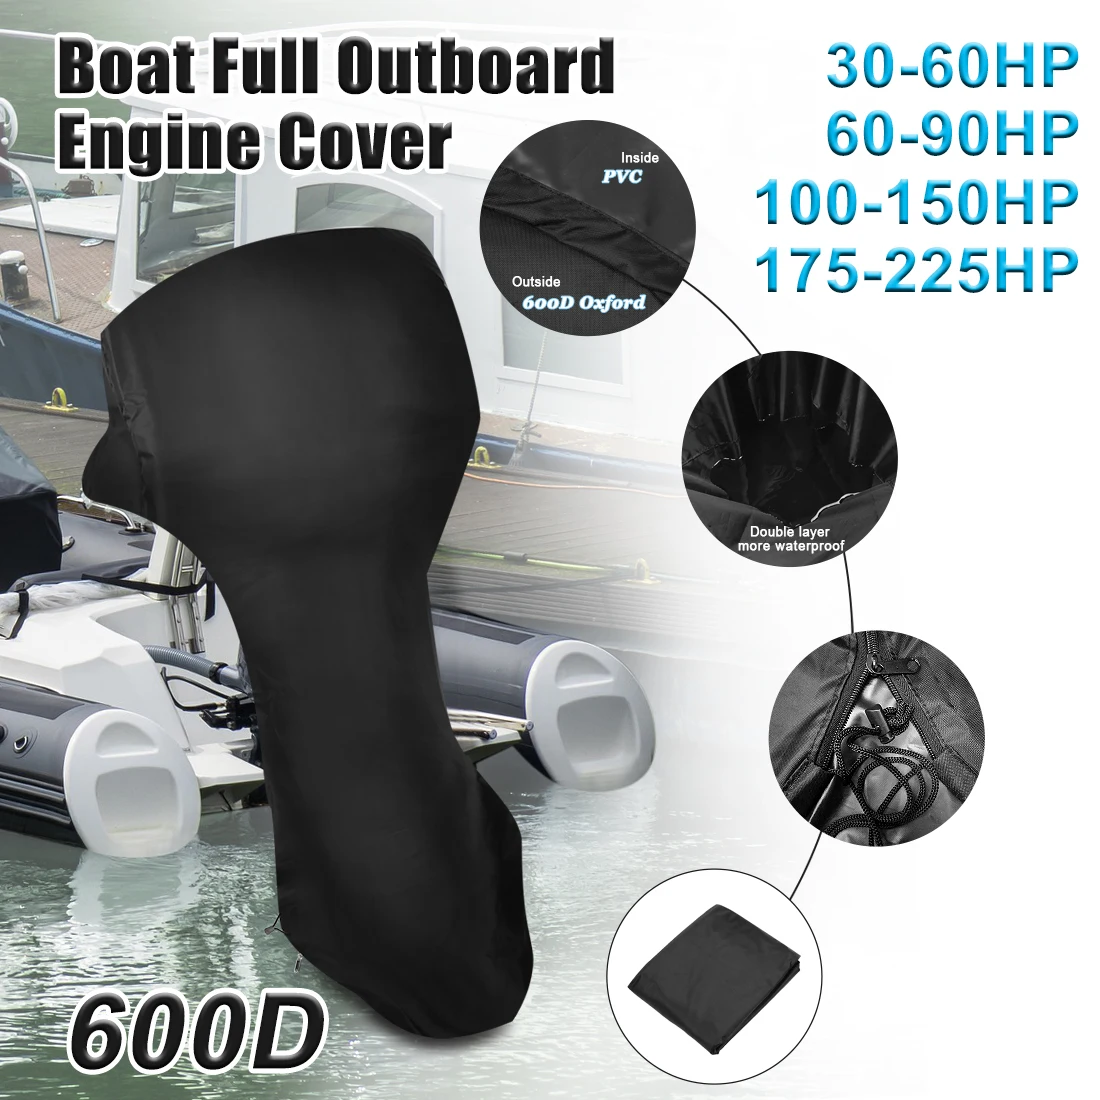 600D Boot Voll Außenbordmotor Abdeckung Für 20-30HP Motor Regen Wasserdicht 